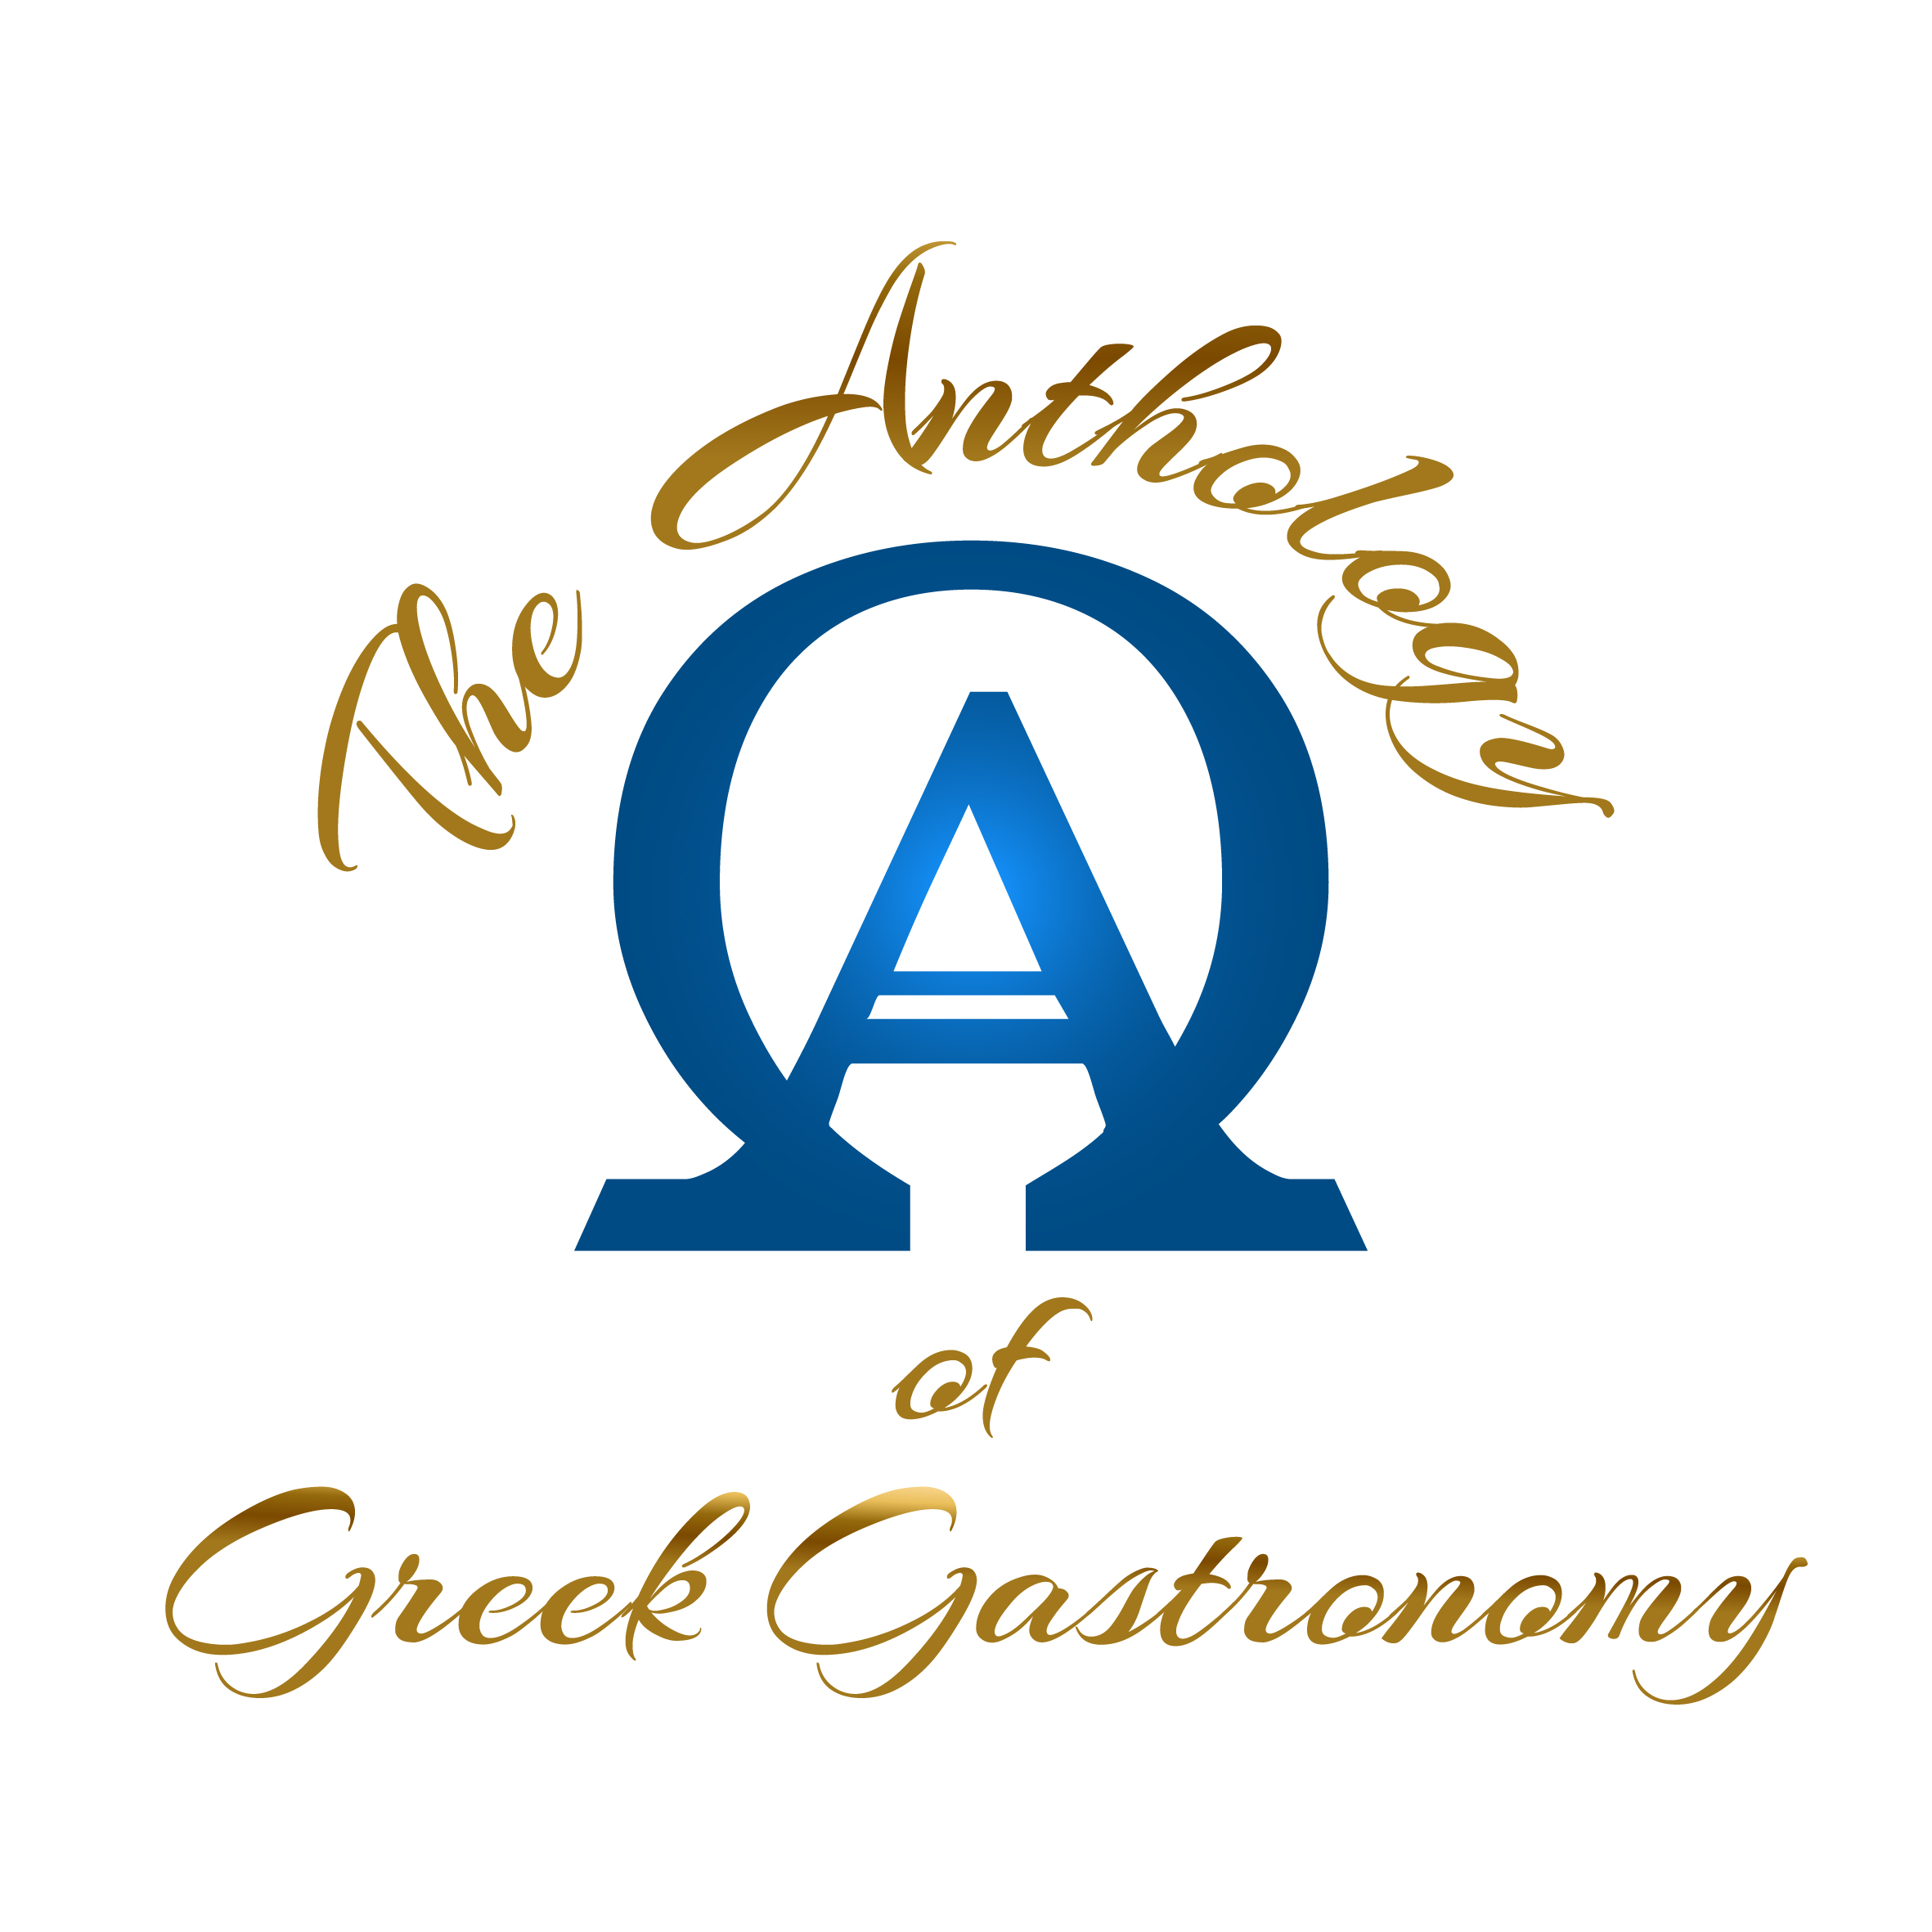  1η Ιανουαρίου 2022 , η Πρωτοχρονιά που έγινε το μεγάλο ξεκίνημα για την Παγκόσμια αναγνώριση της Ελληνικής Γαστρονομίας !